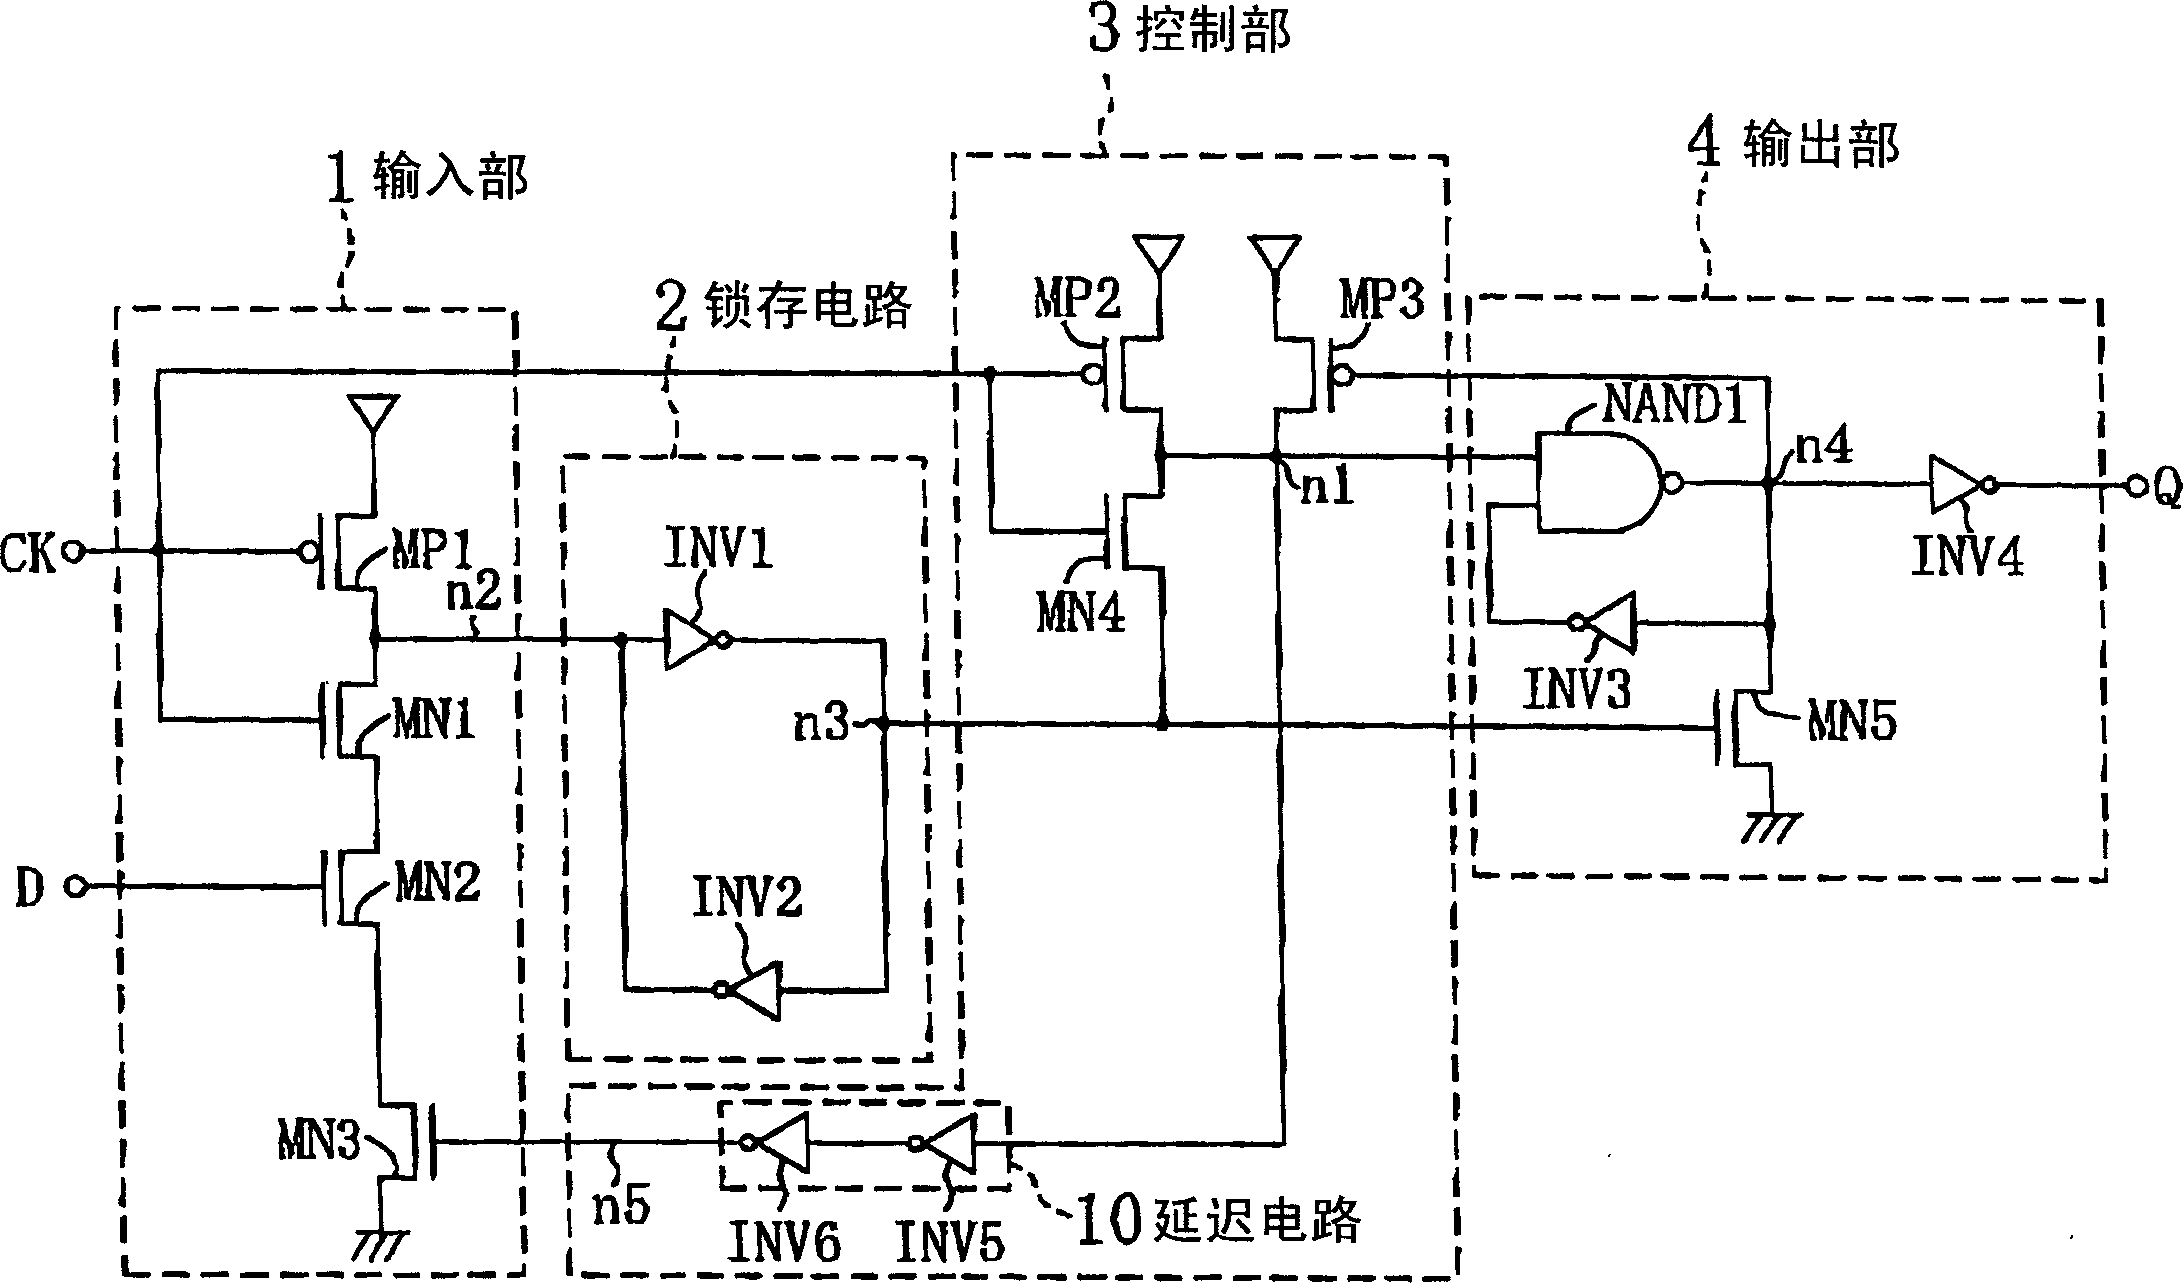 Flip-flop circuit